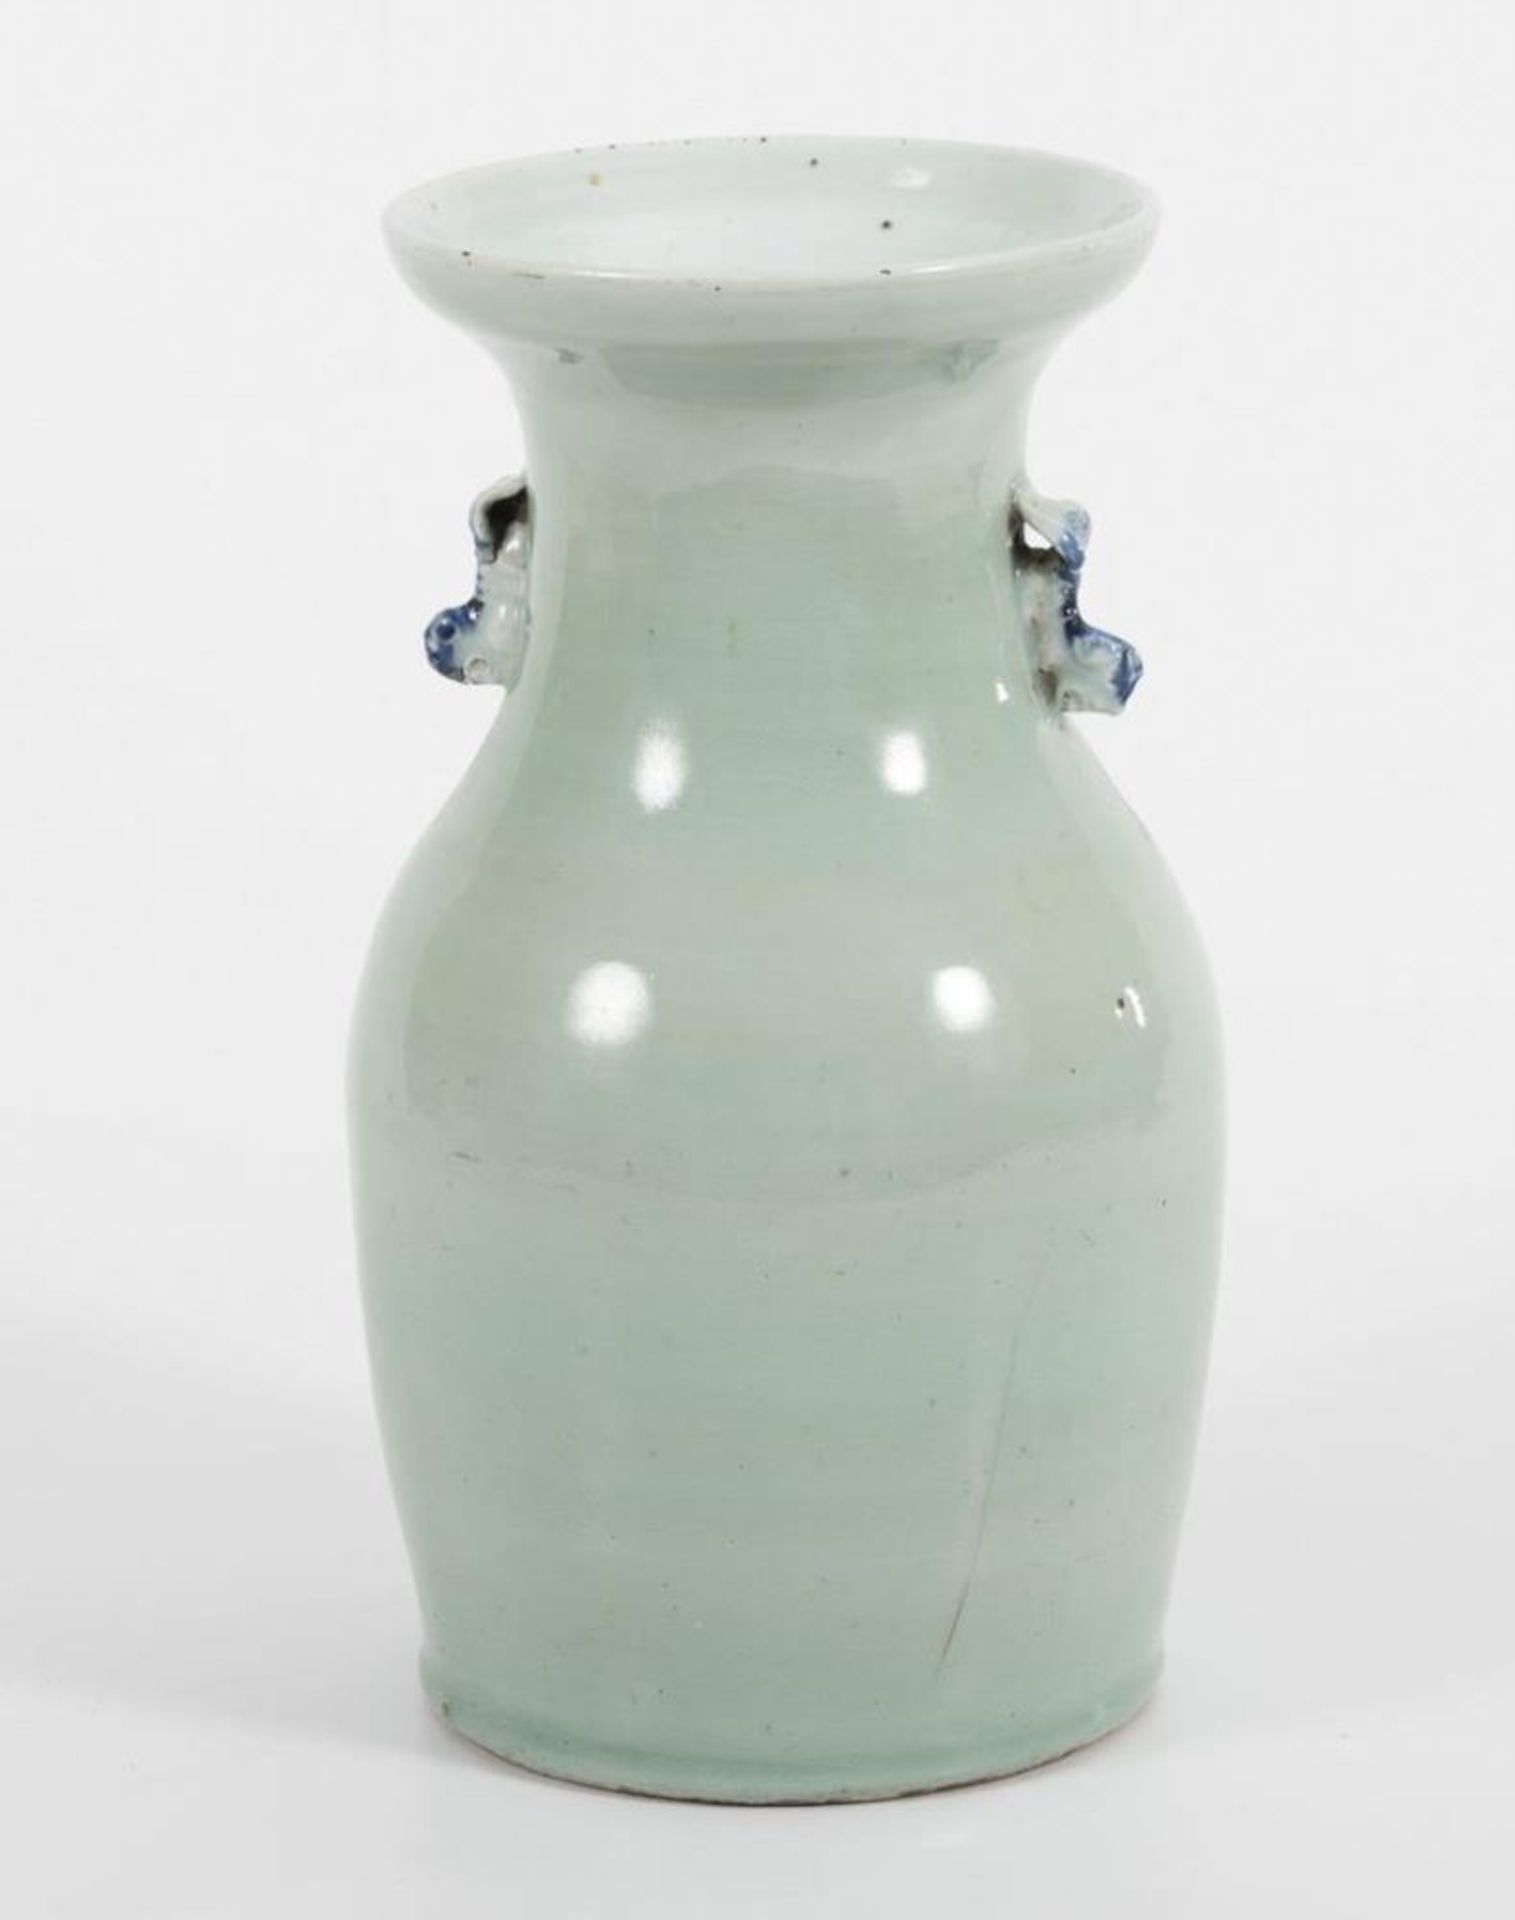 Unterglasurblau-Vase. - Bild 2 aus 3